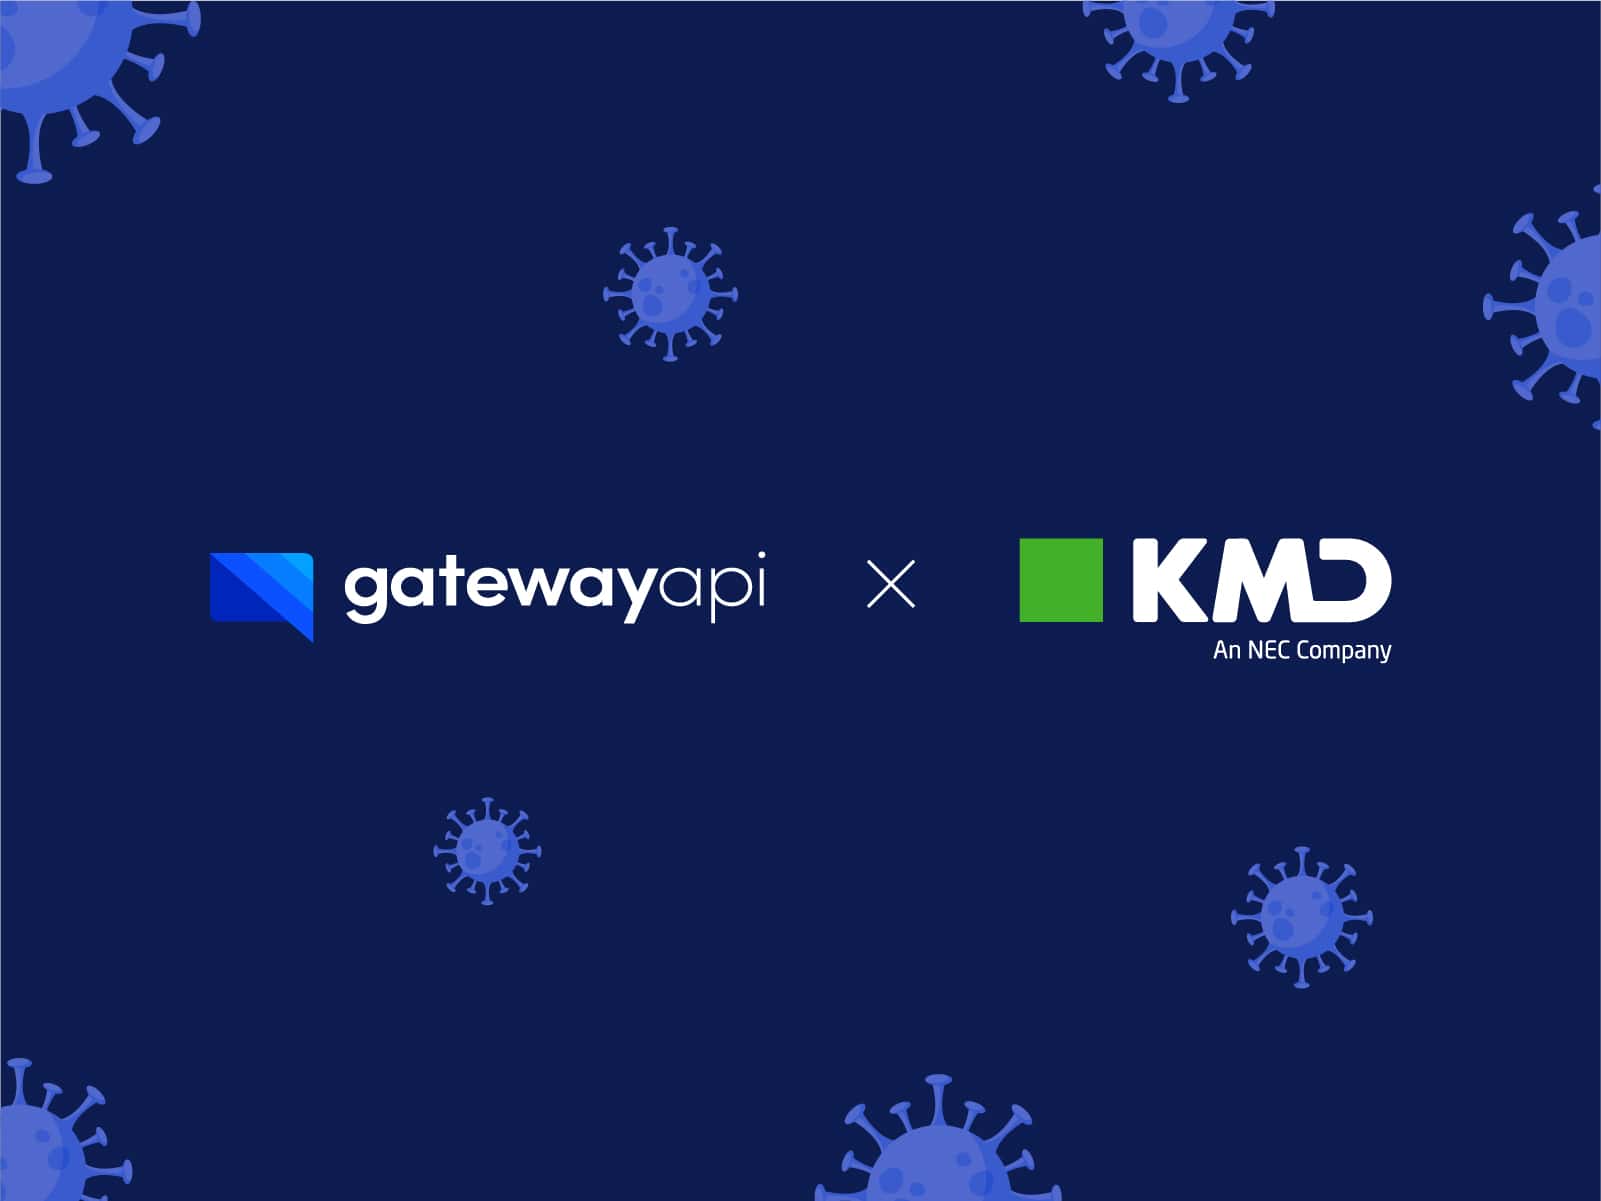 GatewayAPI og KMD: Et samarbejde om COVID-19 testresultater via SMS